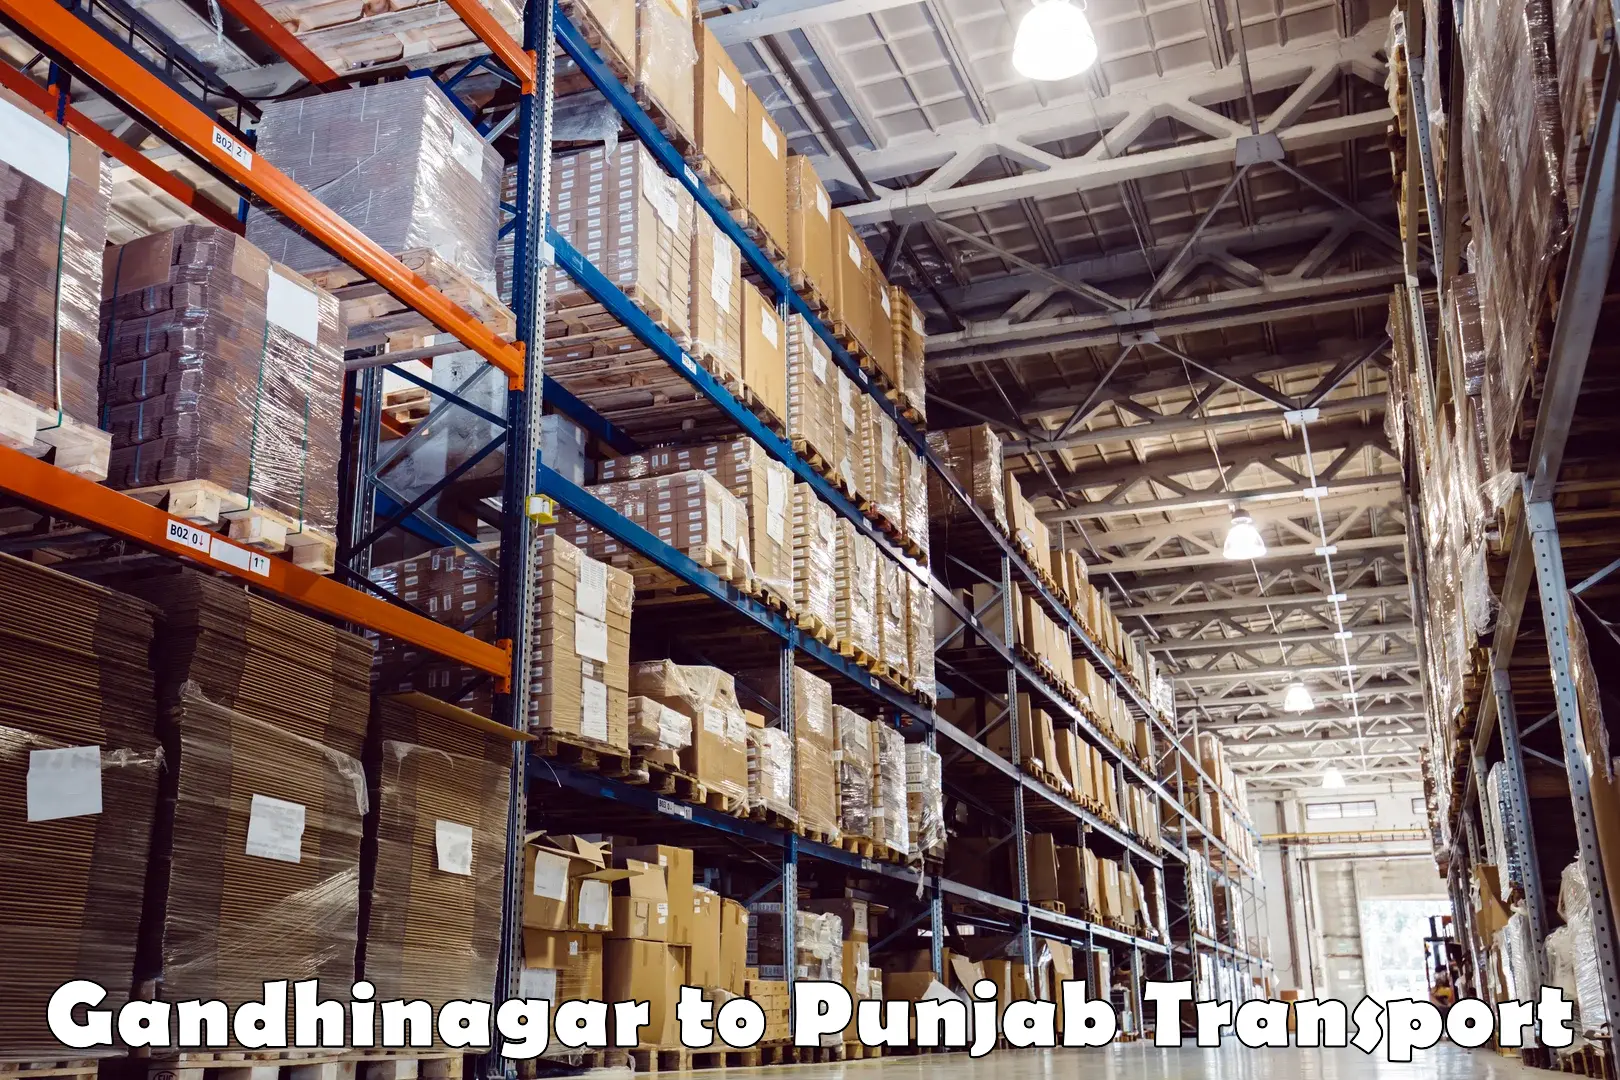 Cargo train transport services Gandhinagar to Sultanpur Lodhi